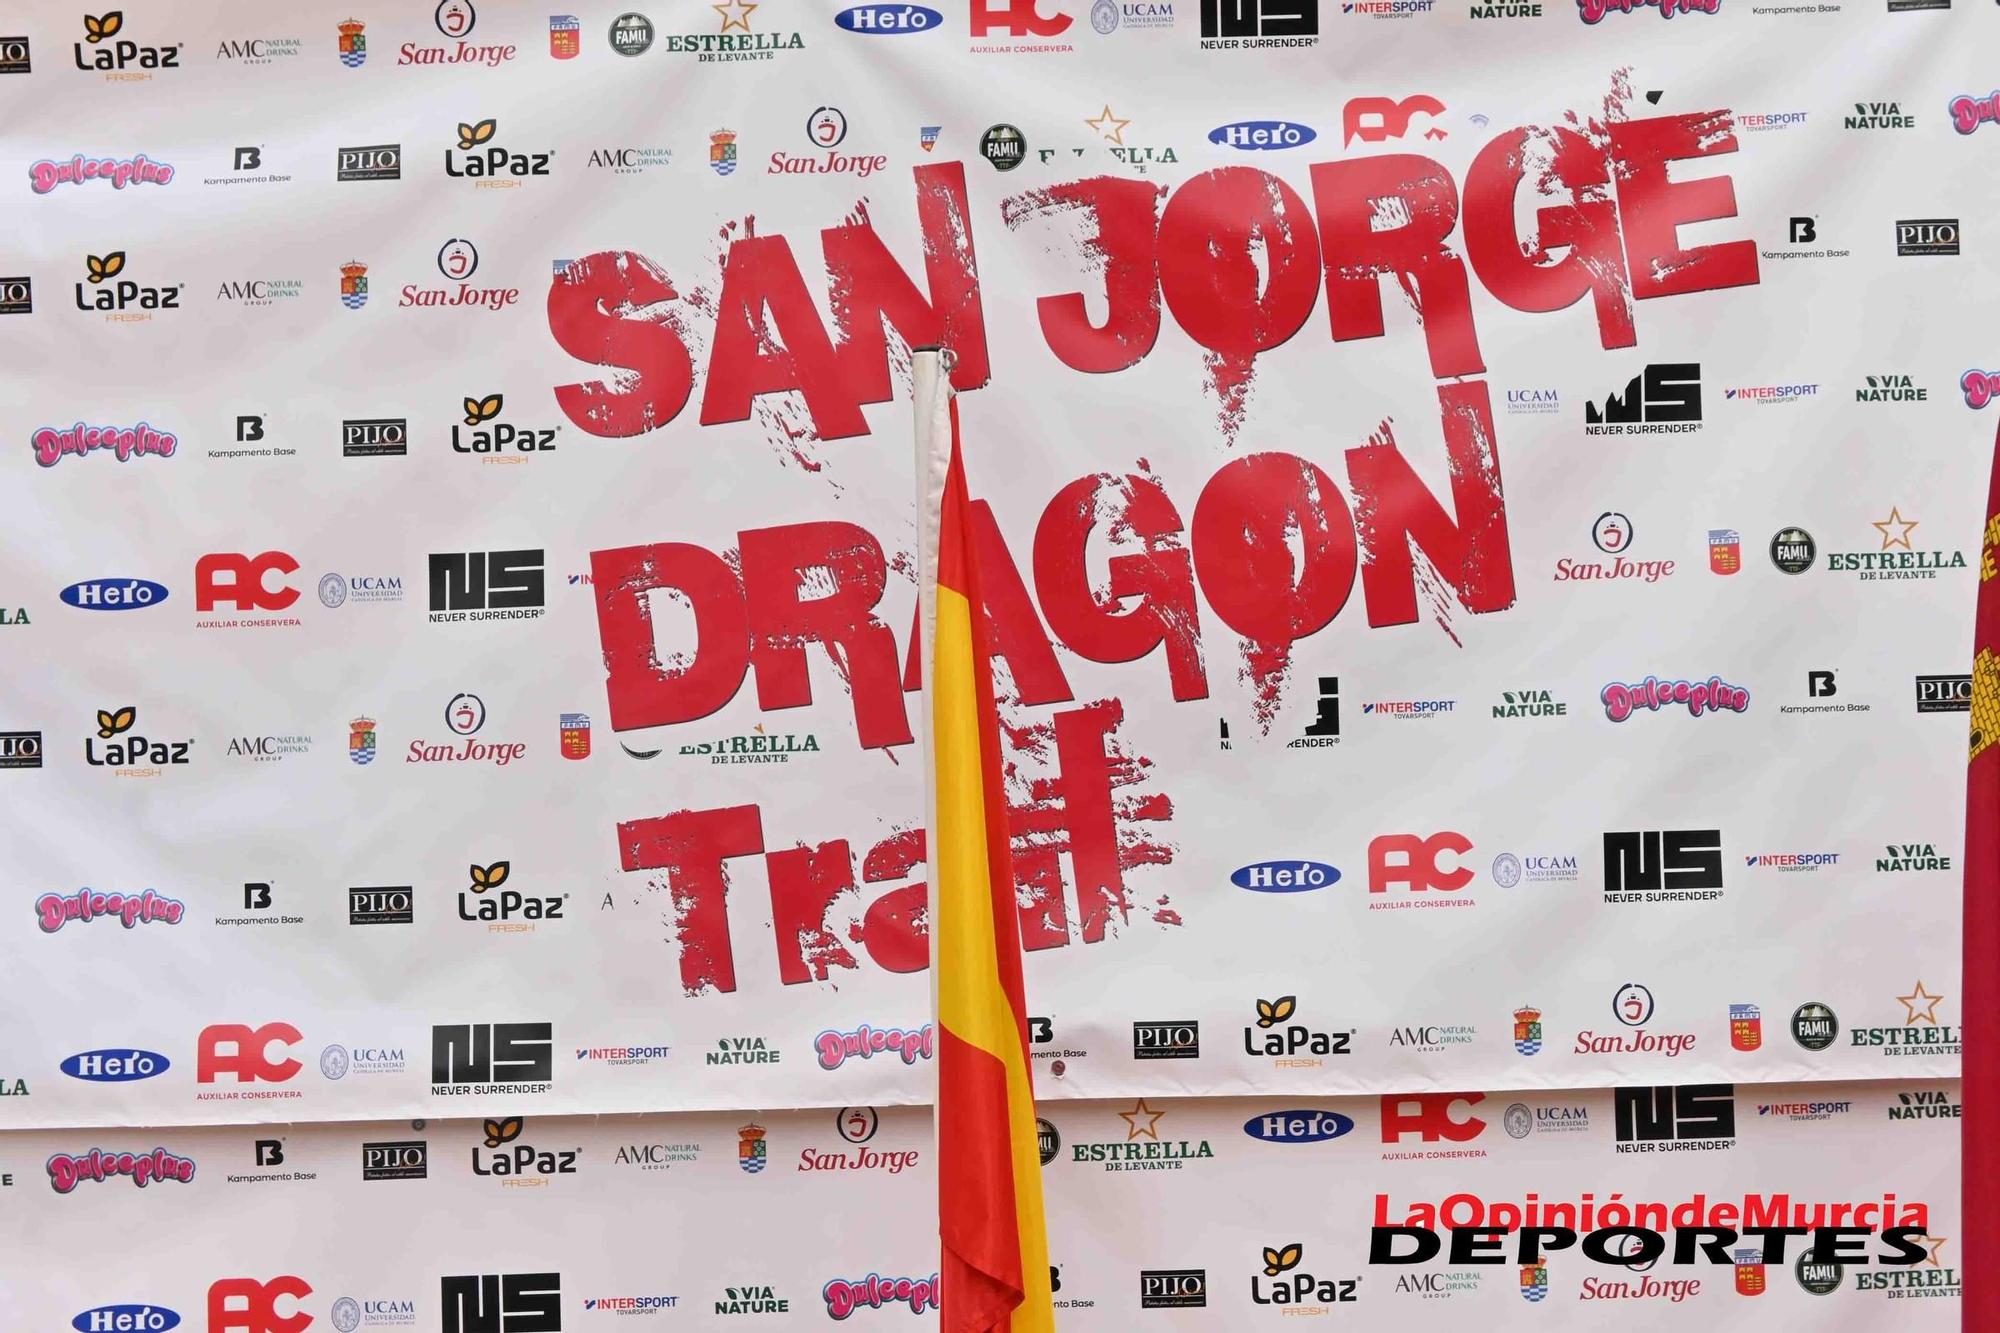 FOTOS: los podios de la San Jorge Dragon Trail